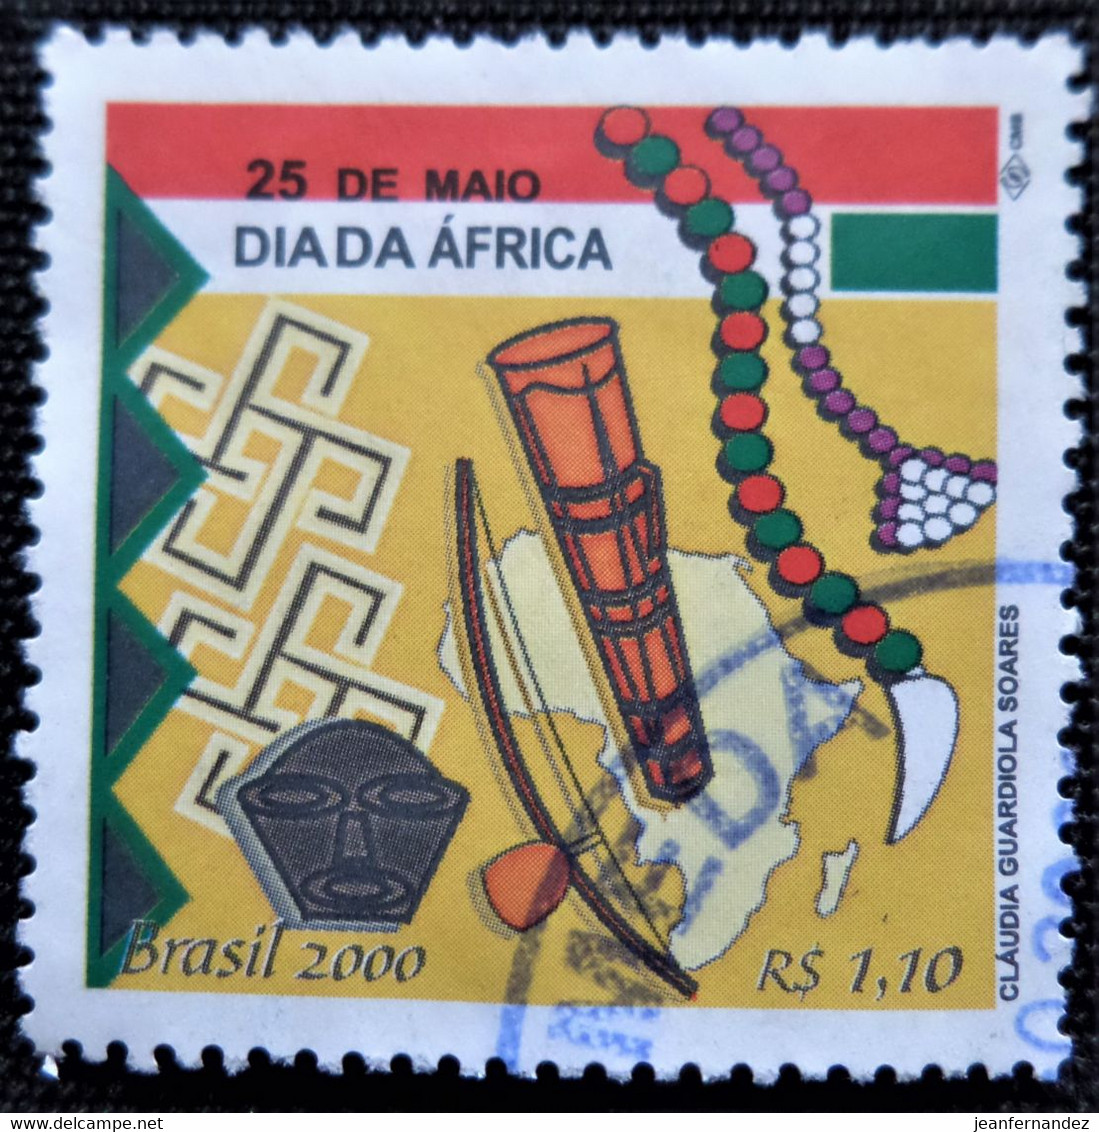 Timbre Du Brésil 2000 Africa Day   Stampworld N° 3057 - Oblitérés